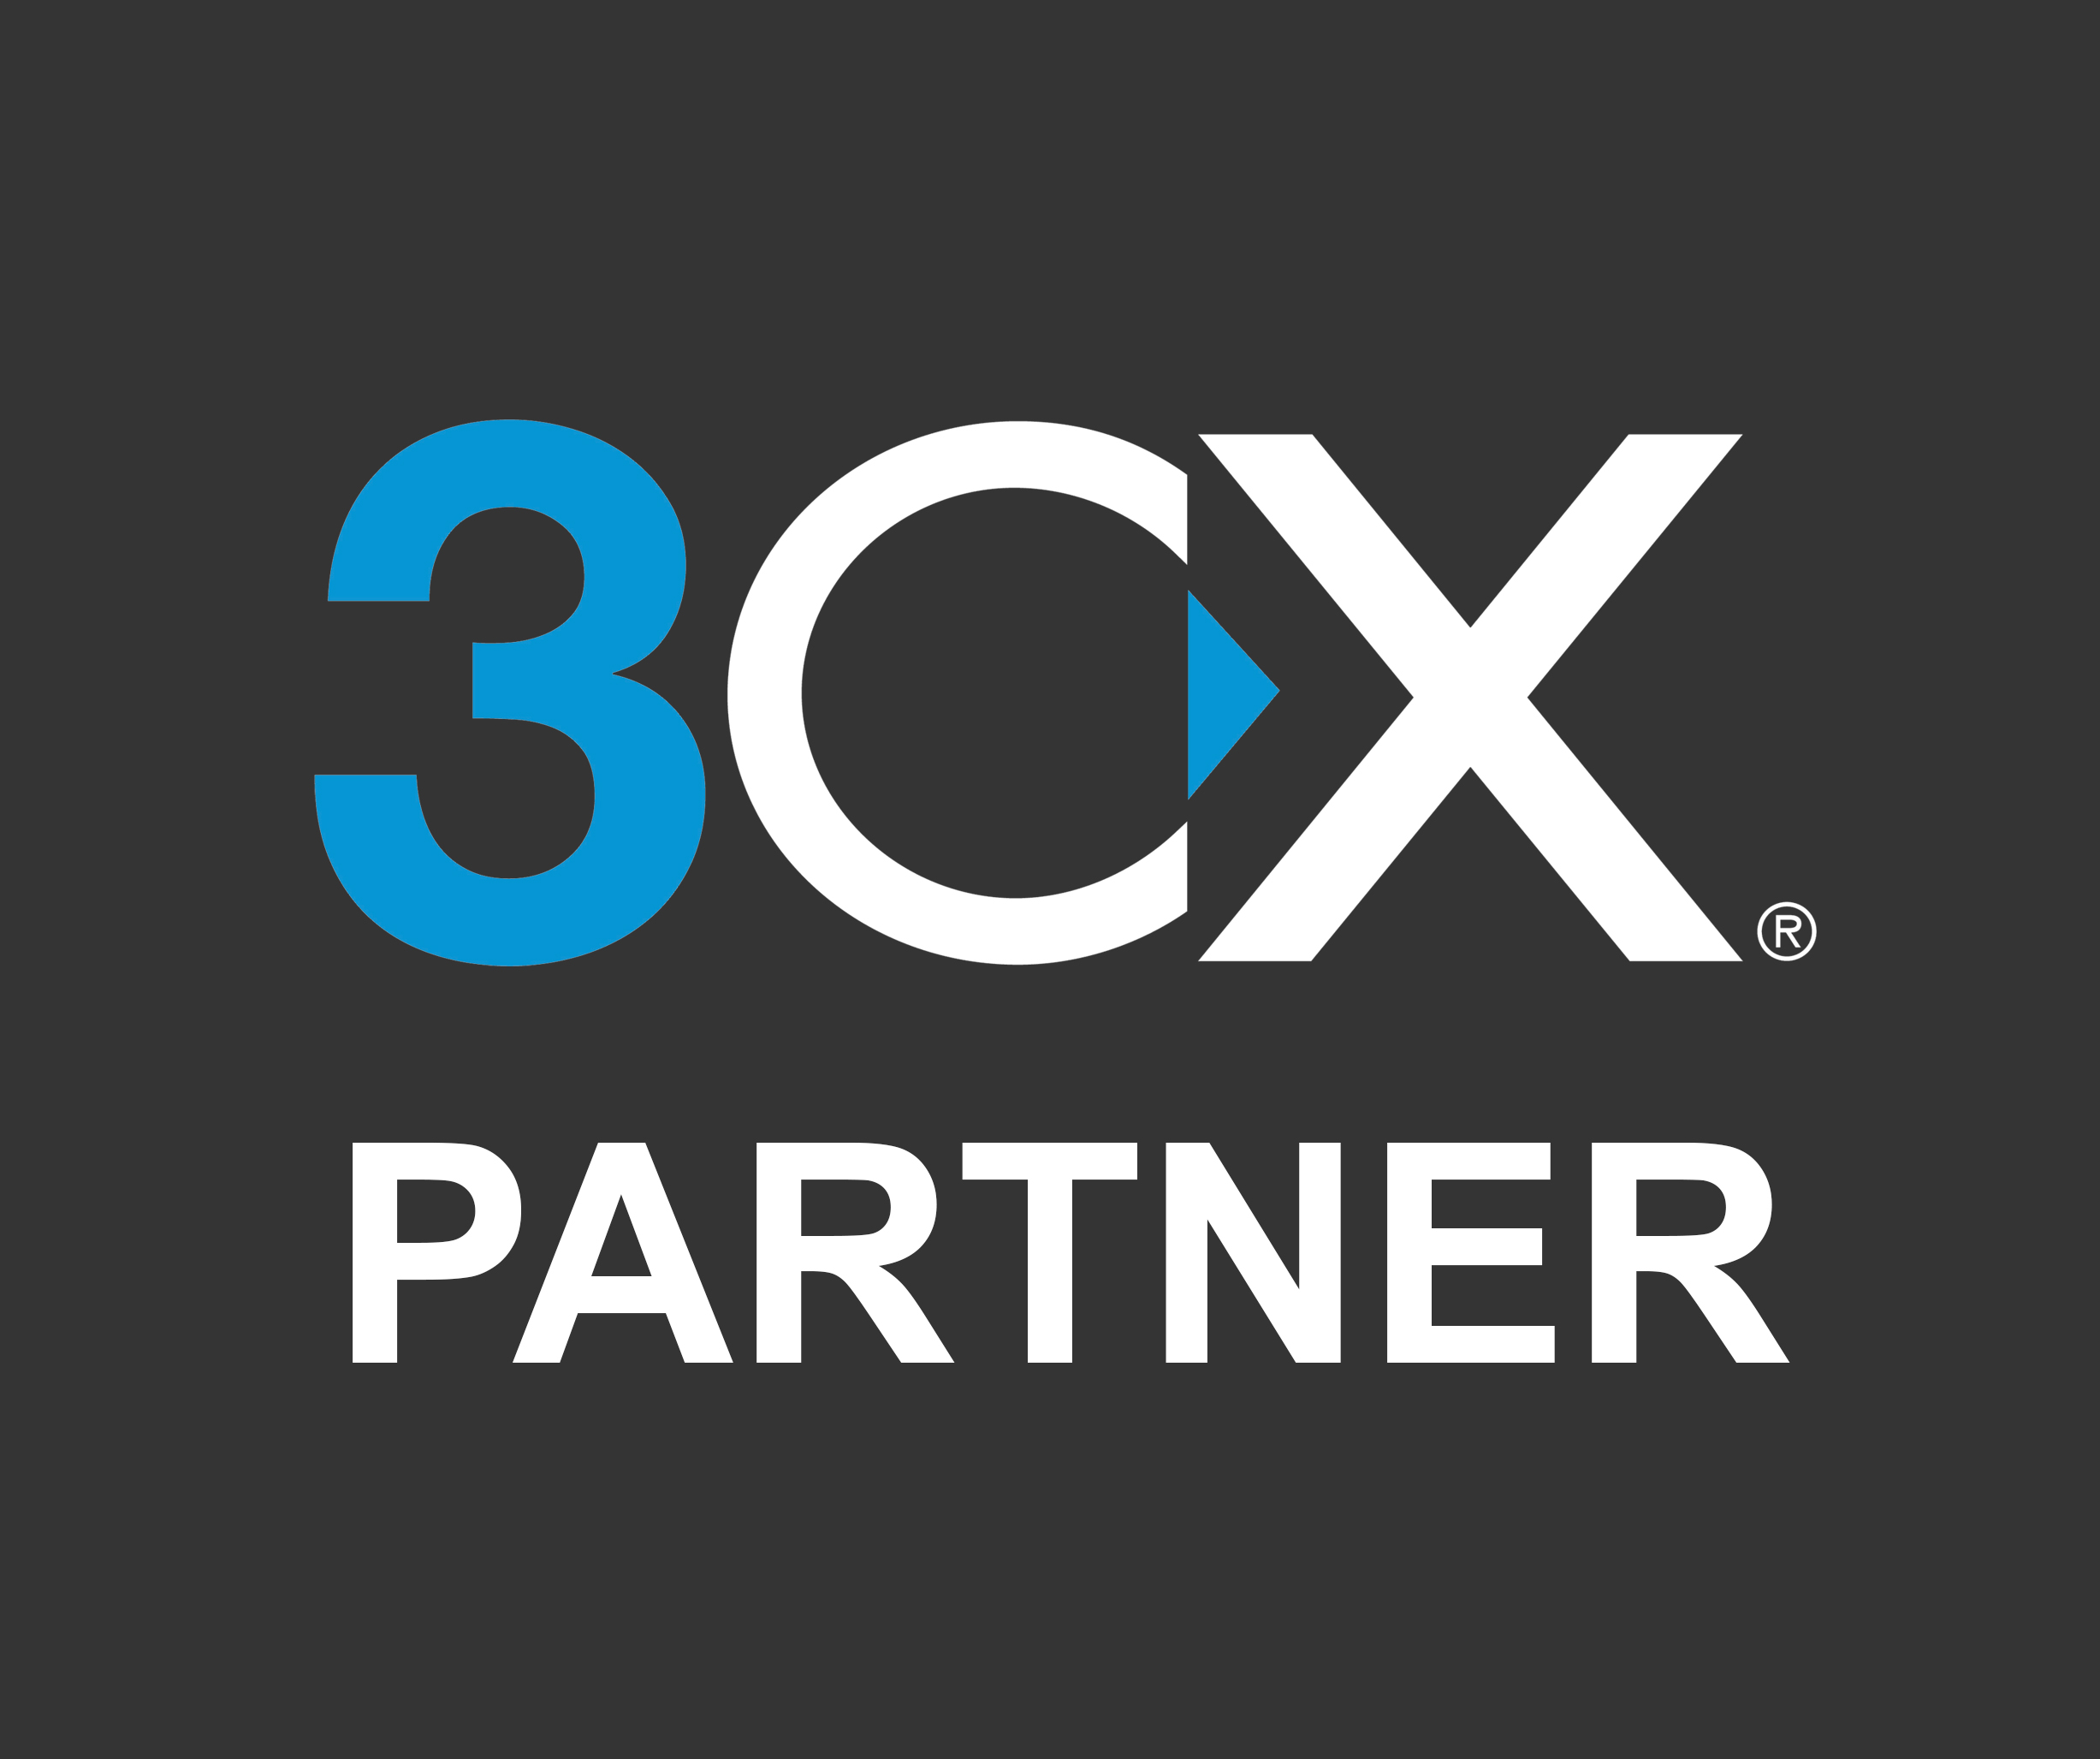 3CX ist Partner von Richter Learning Systems